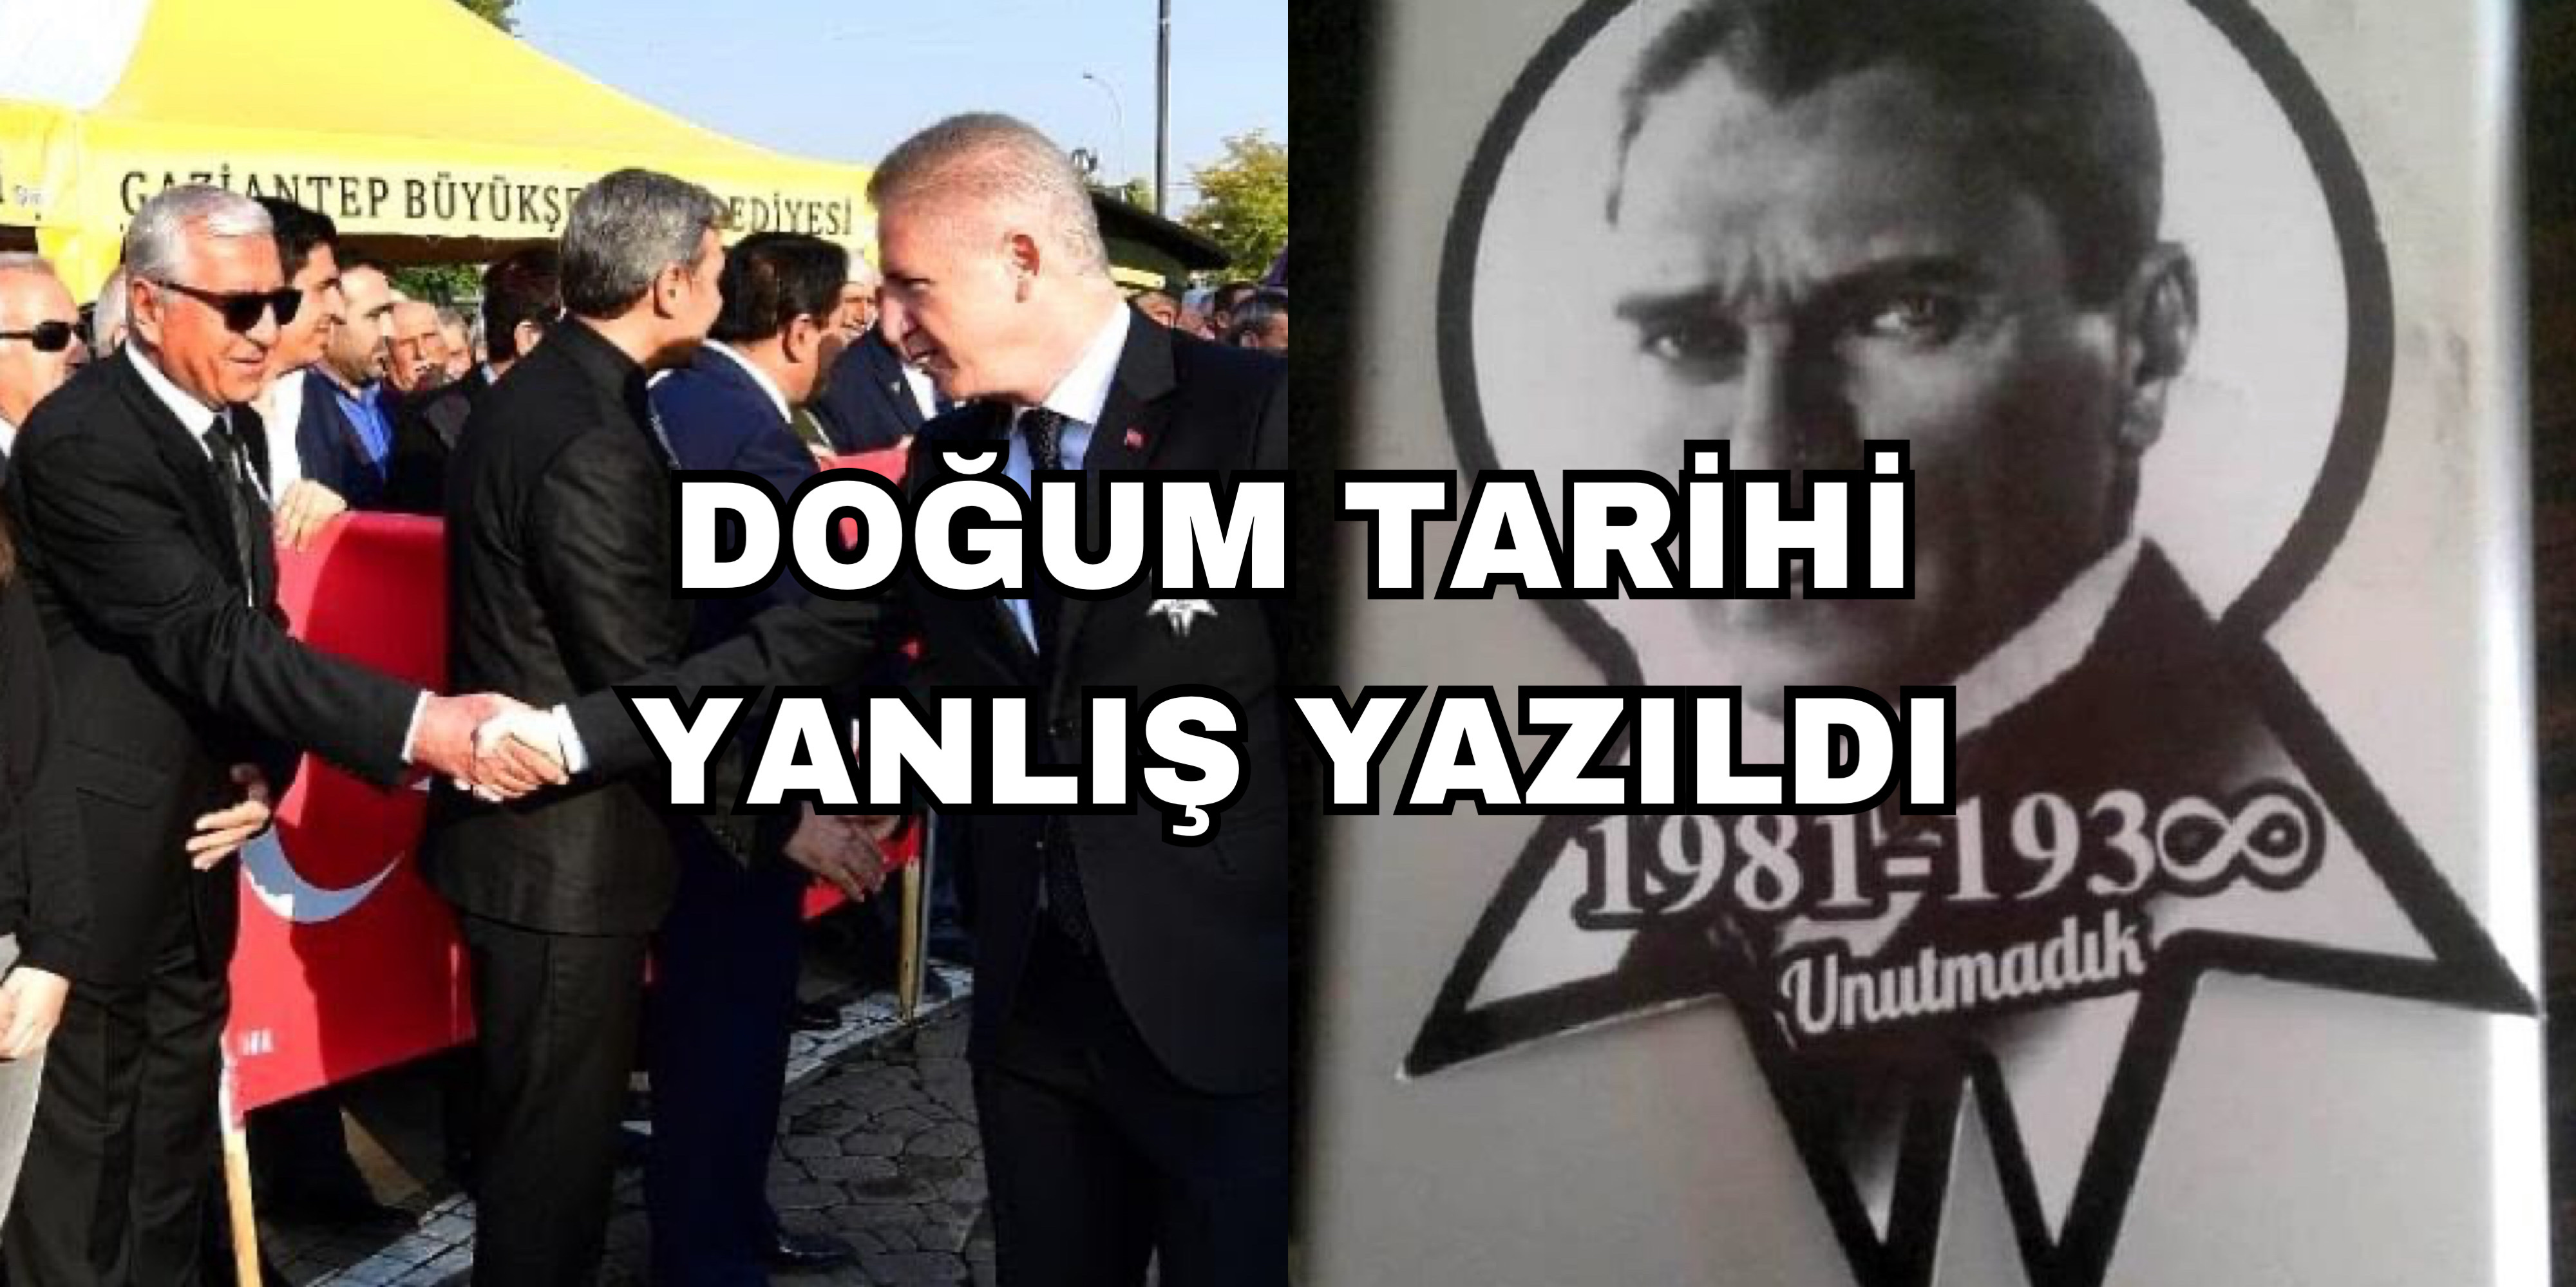 Atatürk’ün Doğum Tarihi Yanlış Yazıldı!